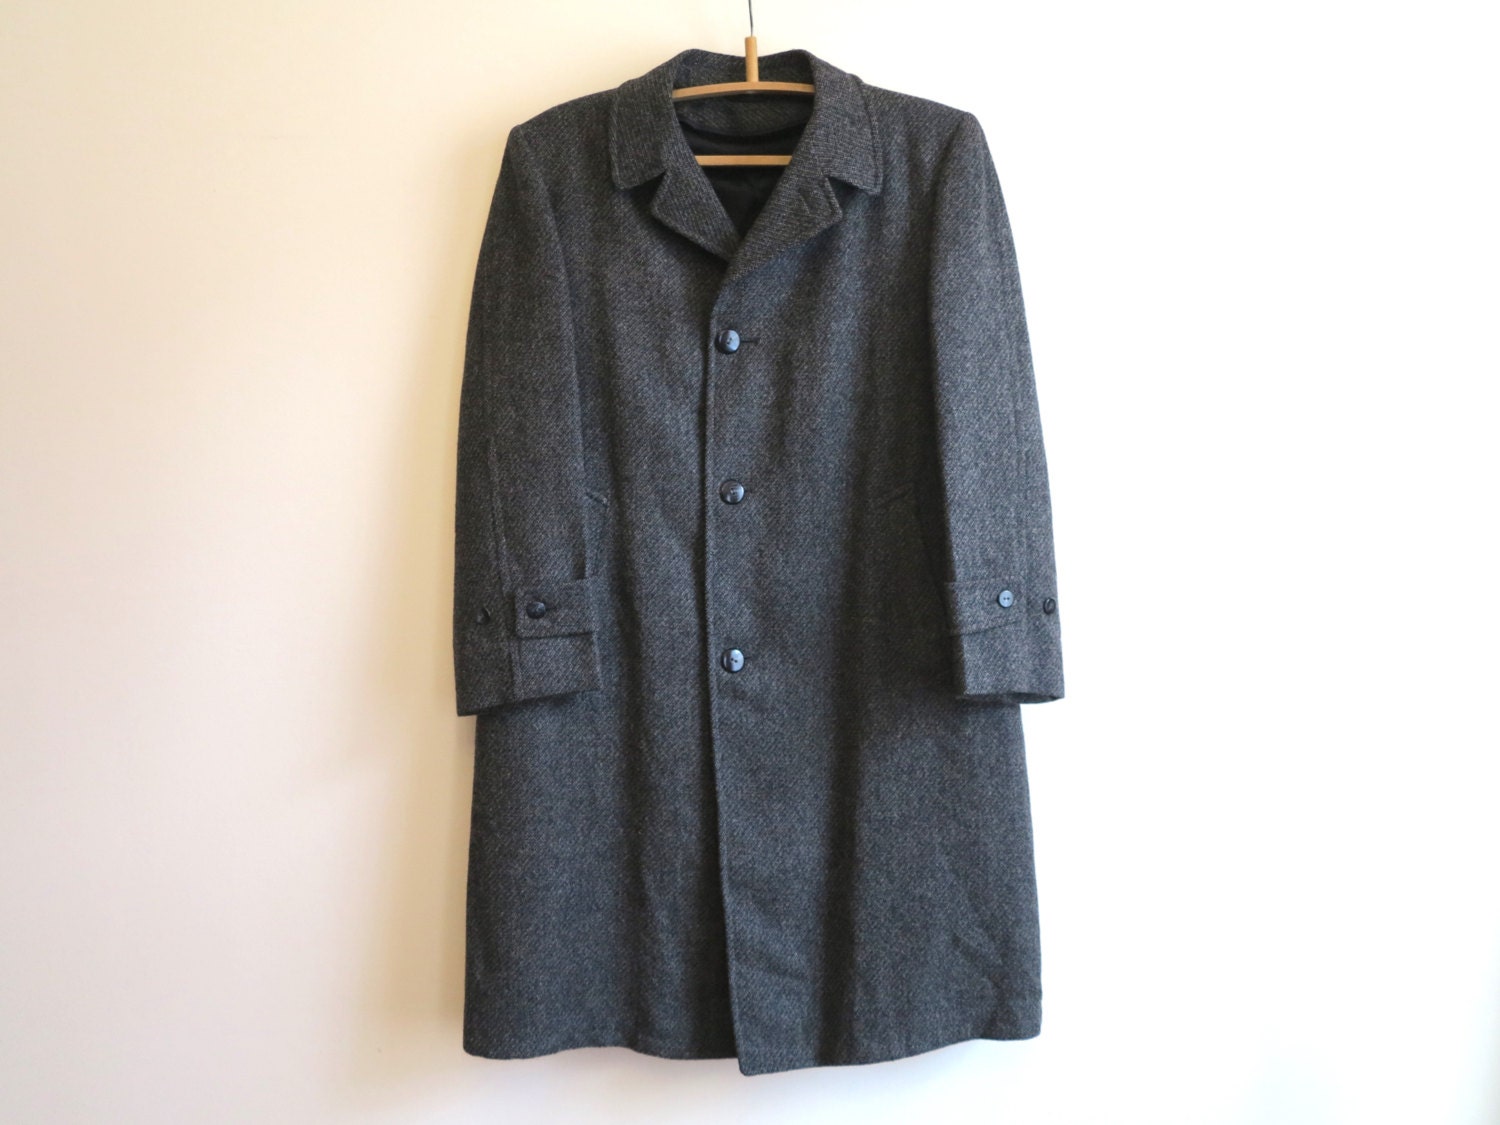 Robert Hall Clothes Men's Grey Overcoat 100% Wool Coat